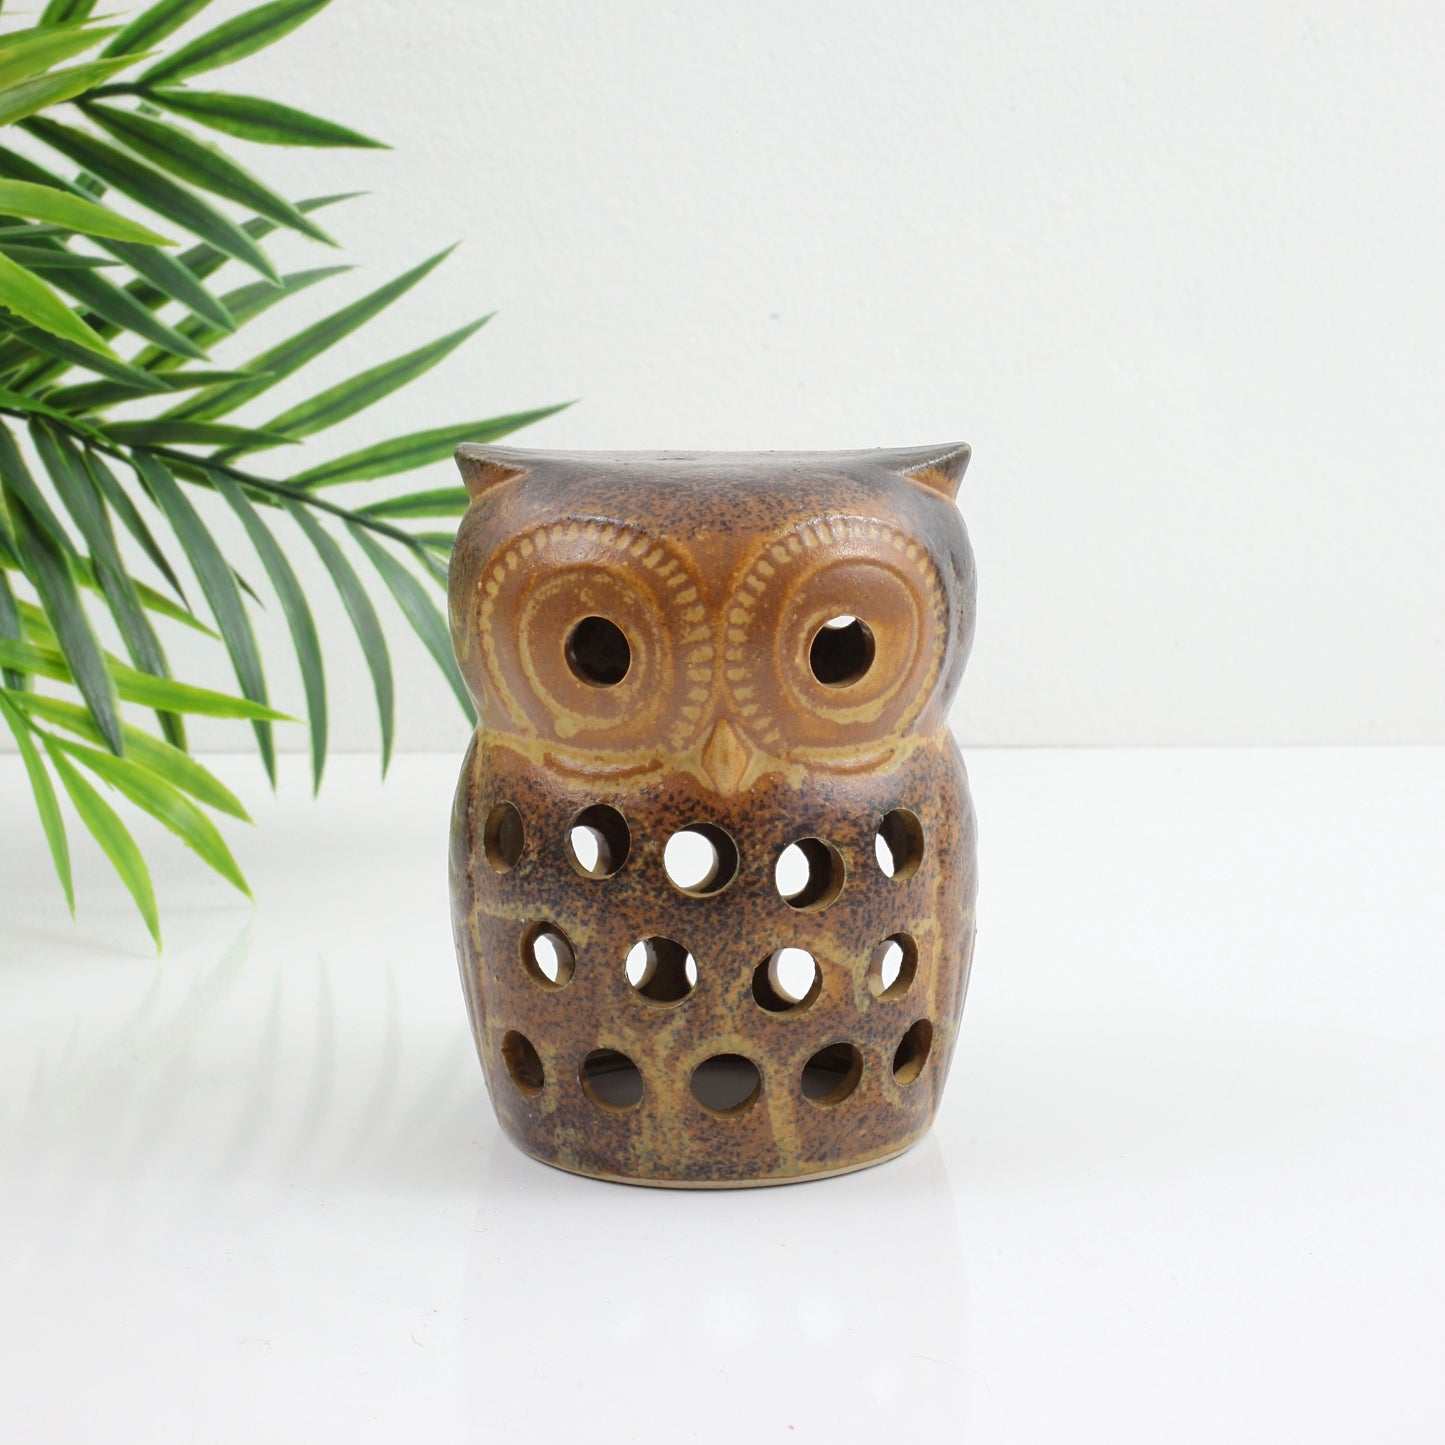 SOLD - Vintage Stoneware Owl Candle Holder & Incense Burner